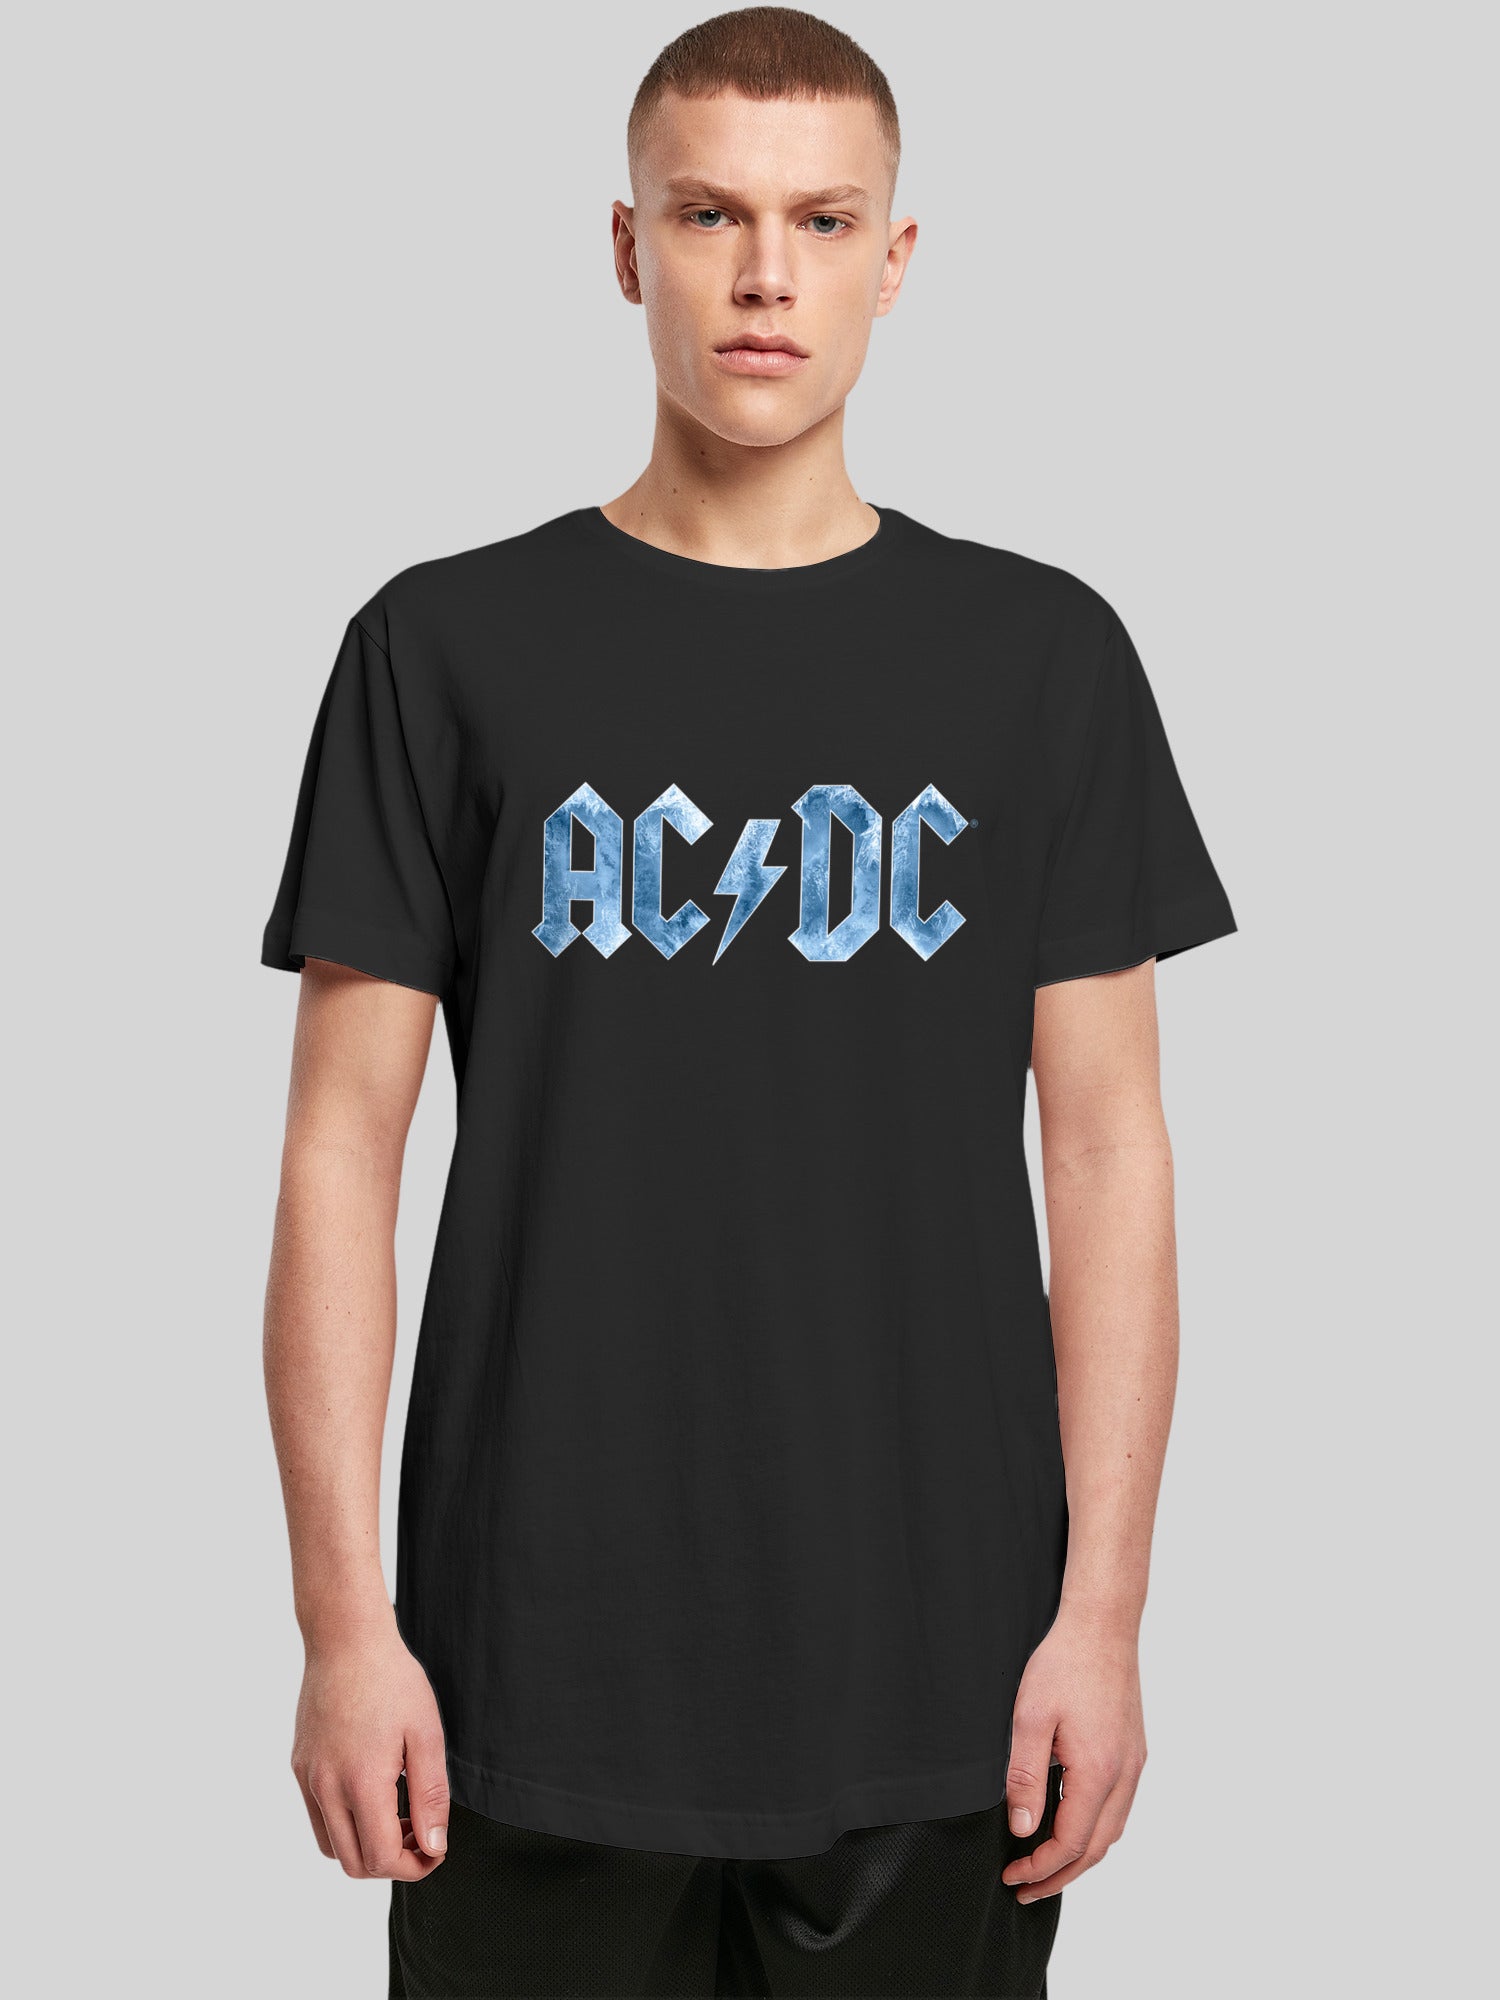 – AC/DC F4NT4STIC